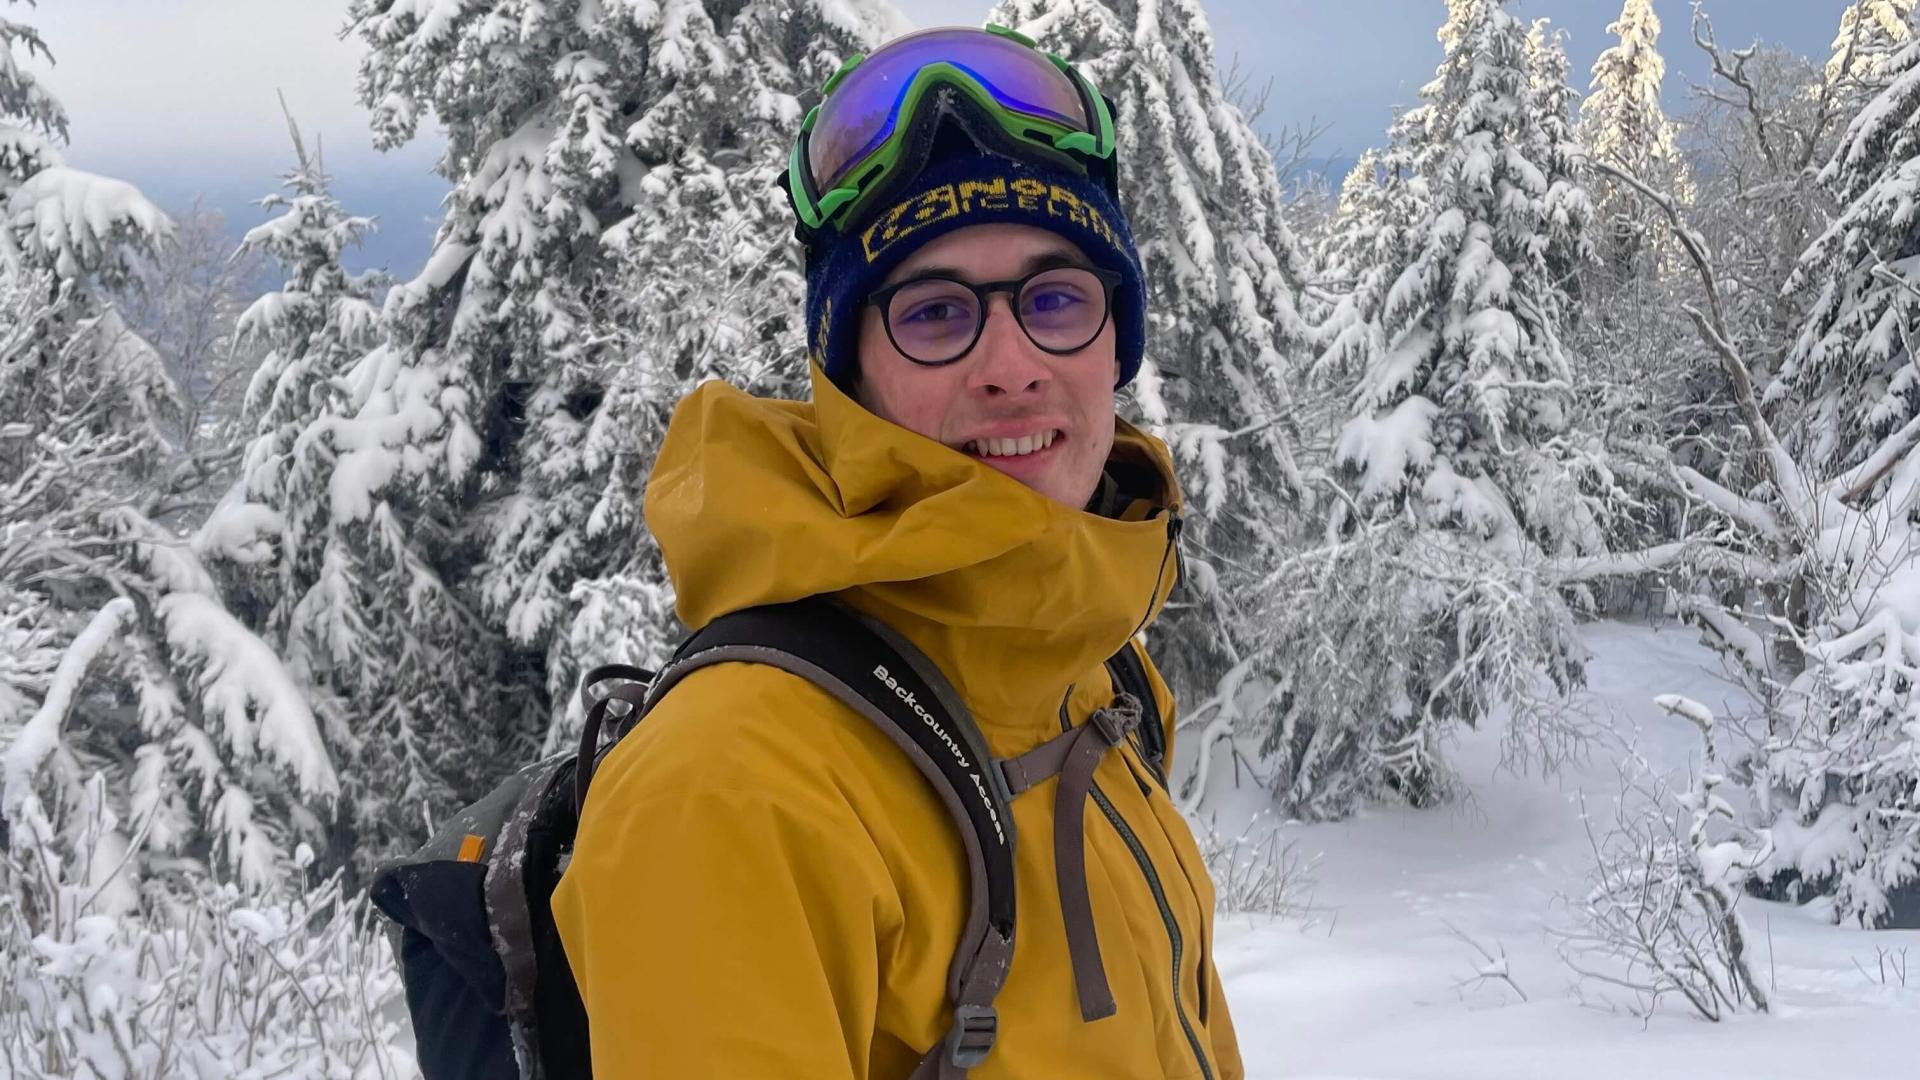 Finn in ski gear standing in front of snowy trees.